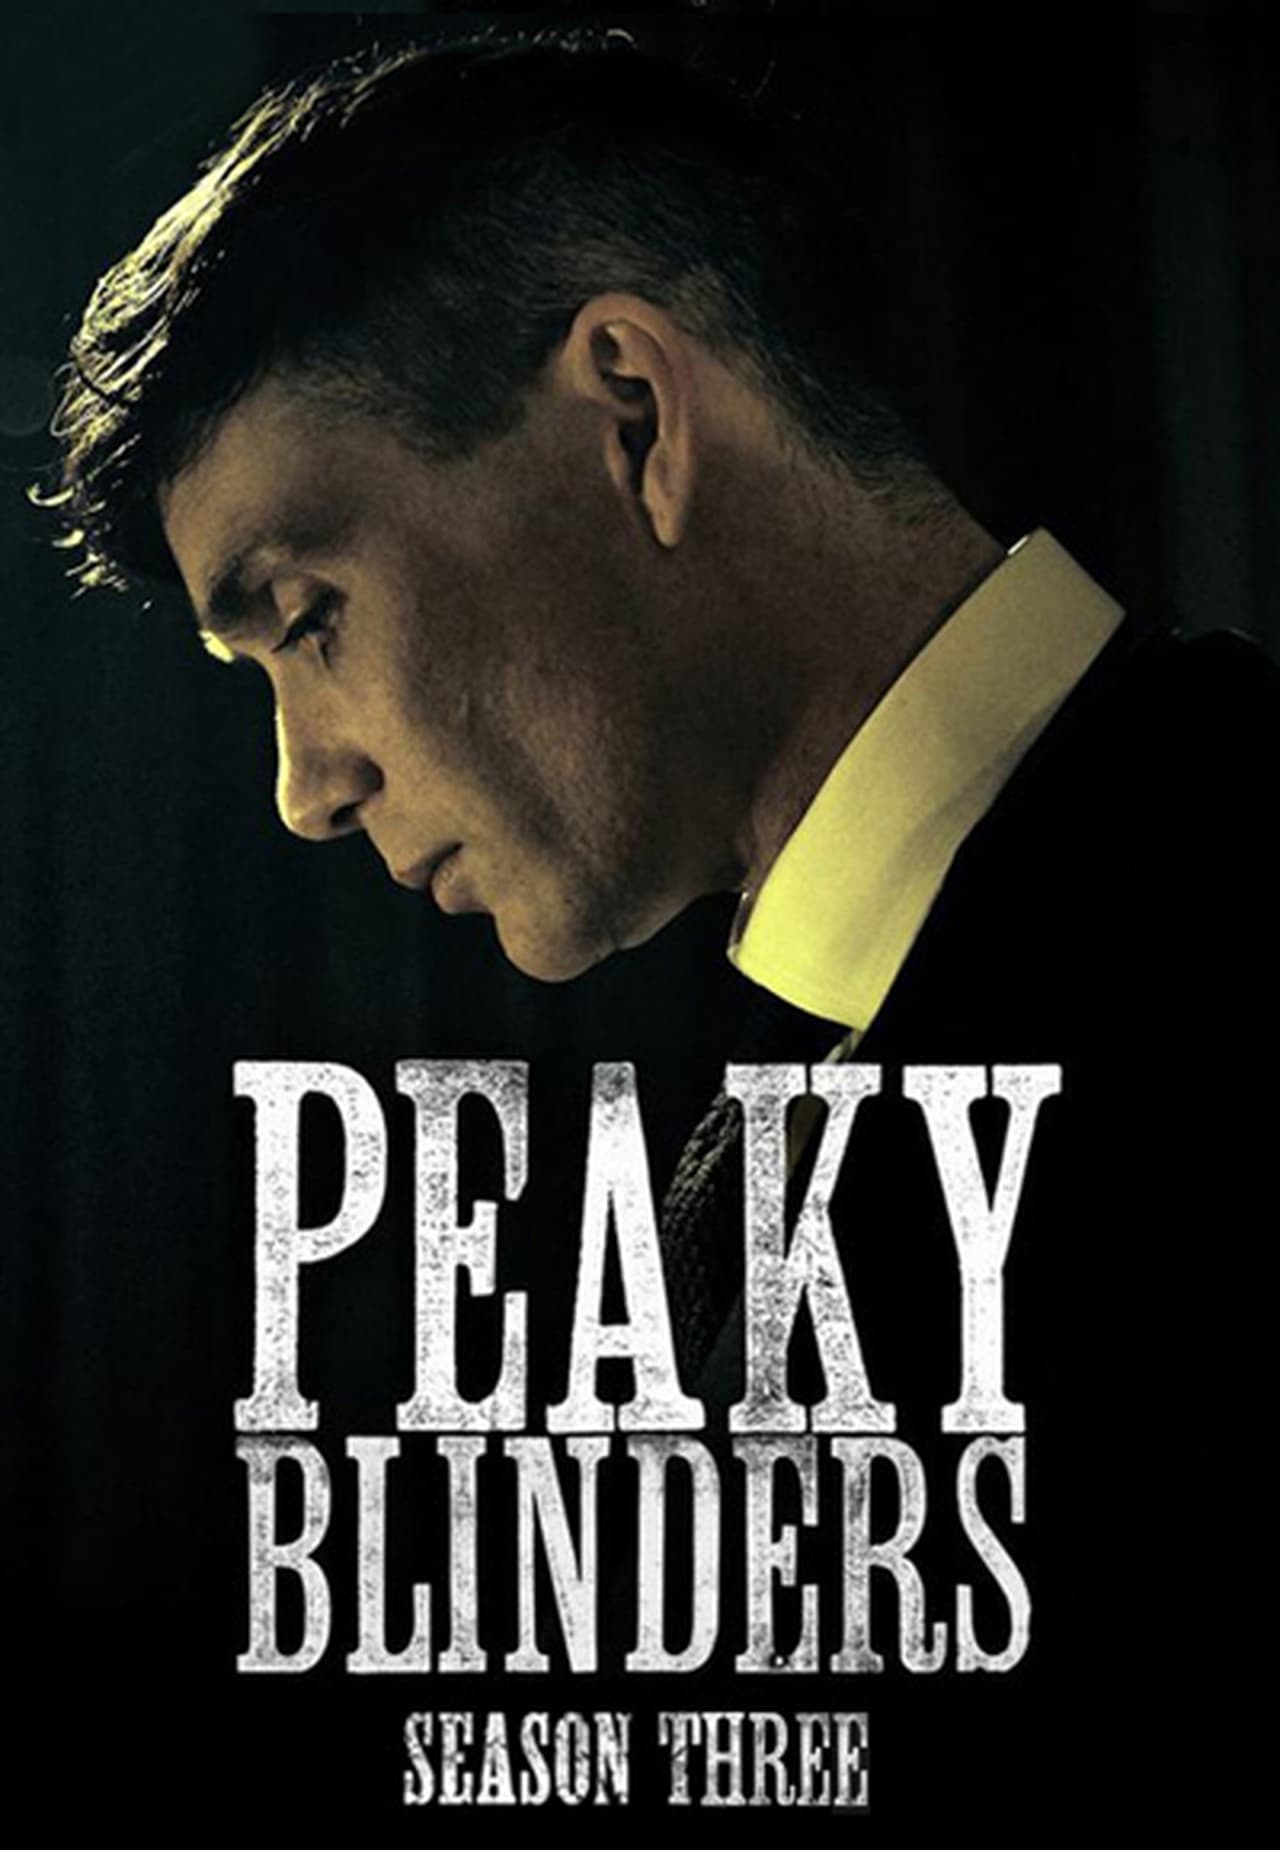 Peaky Blinders Season 3 - Watch full episodes free online at Teatv